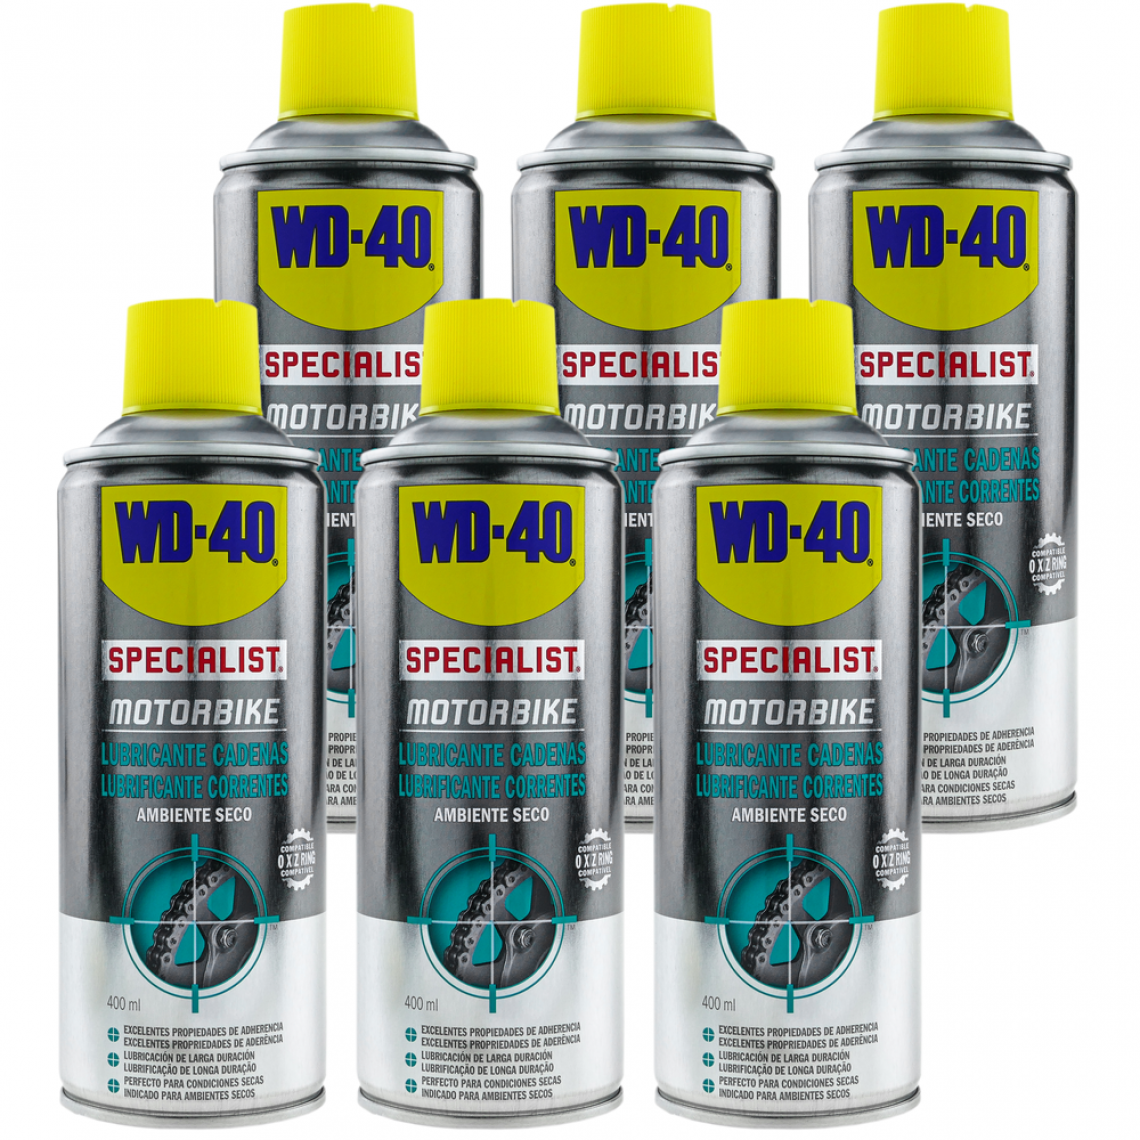 Wd-40 - Lubrifiant pour chaîne SPECIALIST MOTORBIKE 400 ml (boîte de 6 unités) - Mastic, silicone, joint